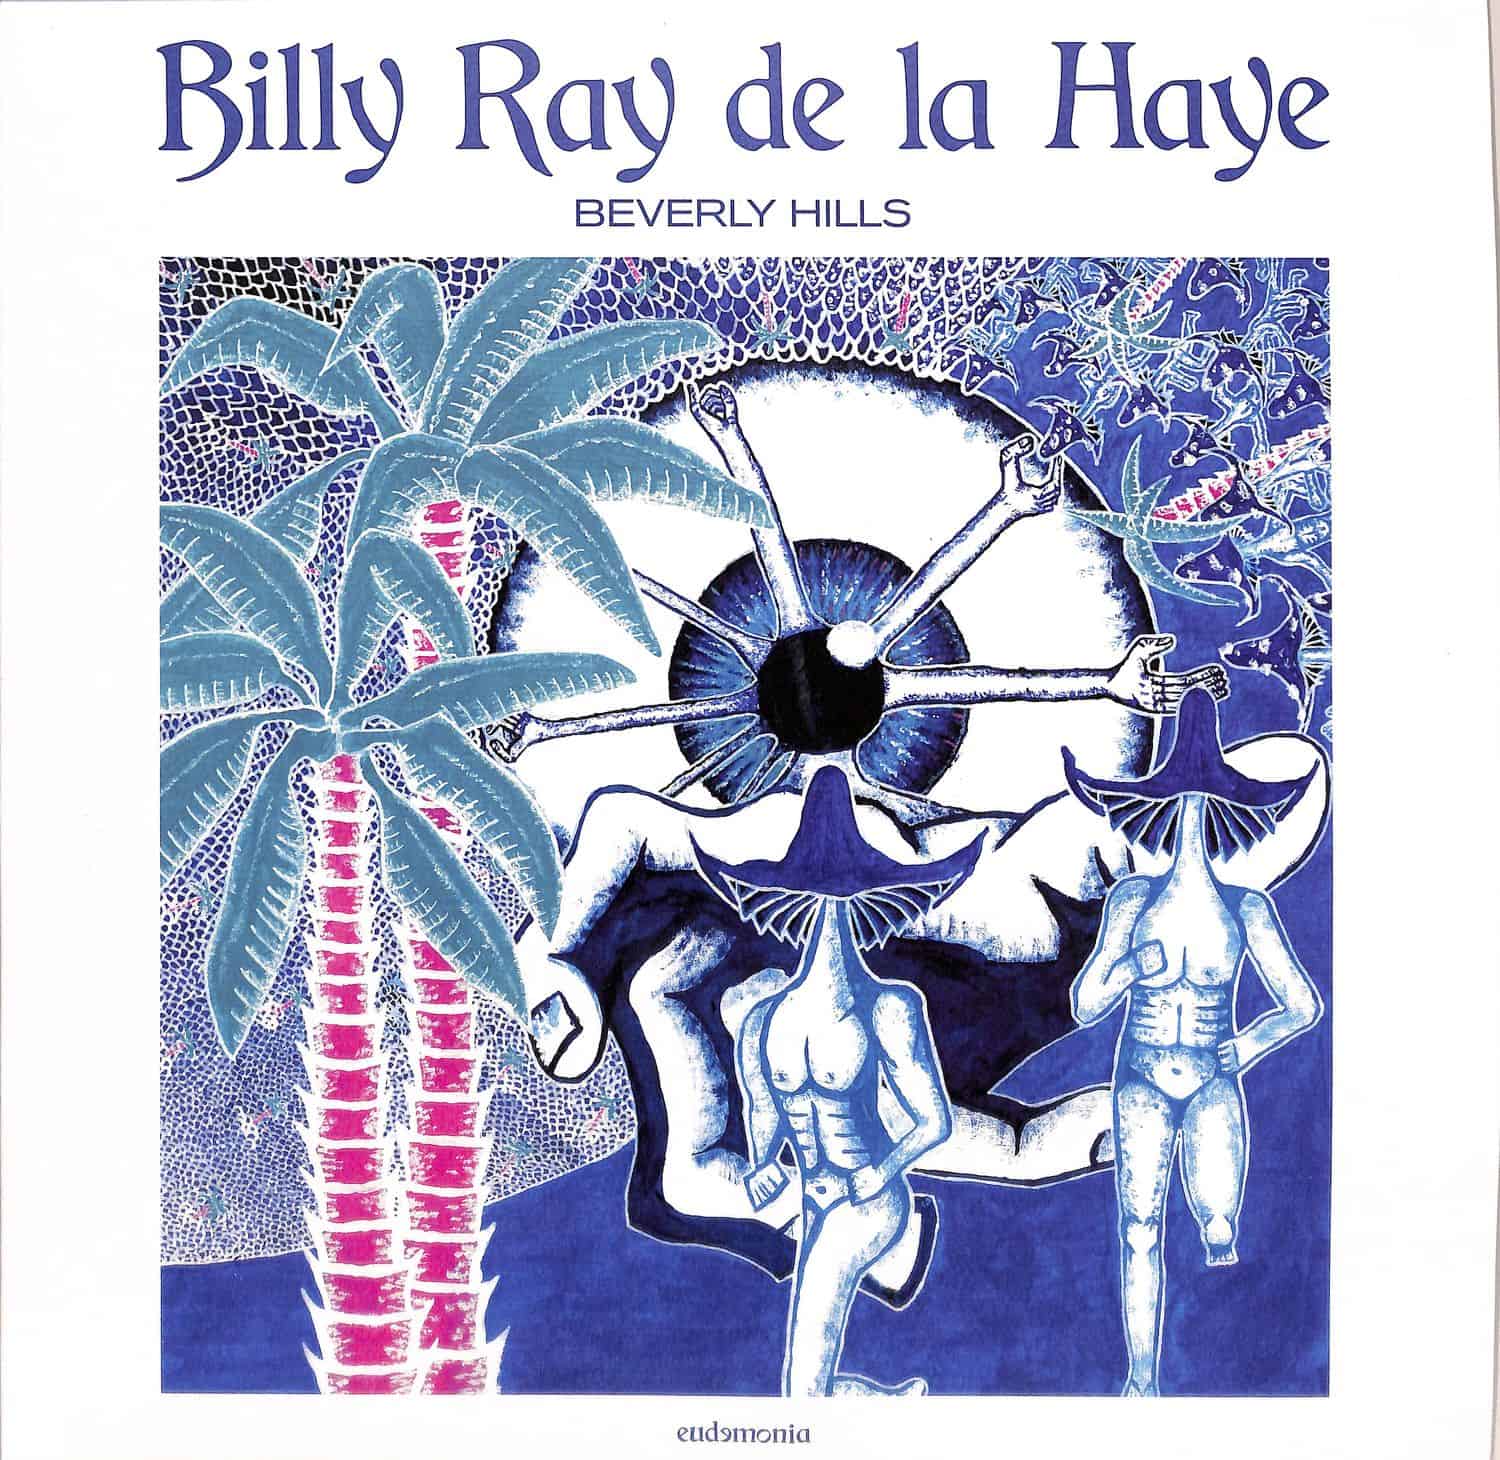 Billy Ray de la Haye - BEVERLY HILLS 